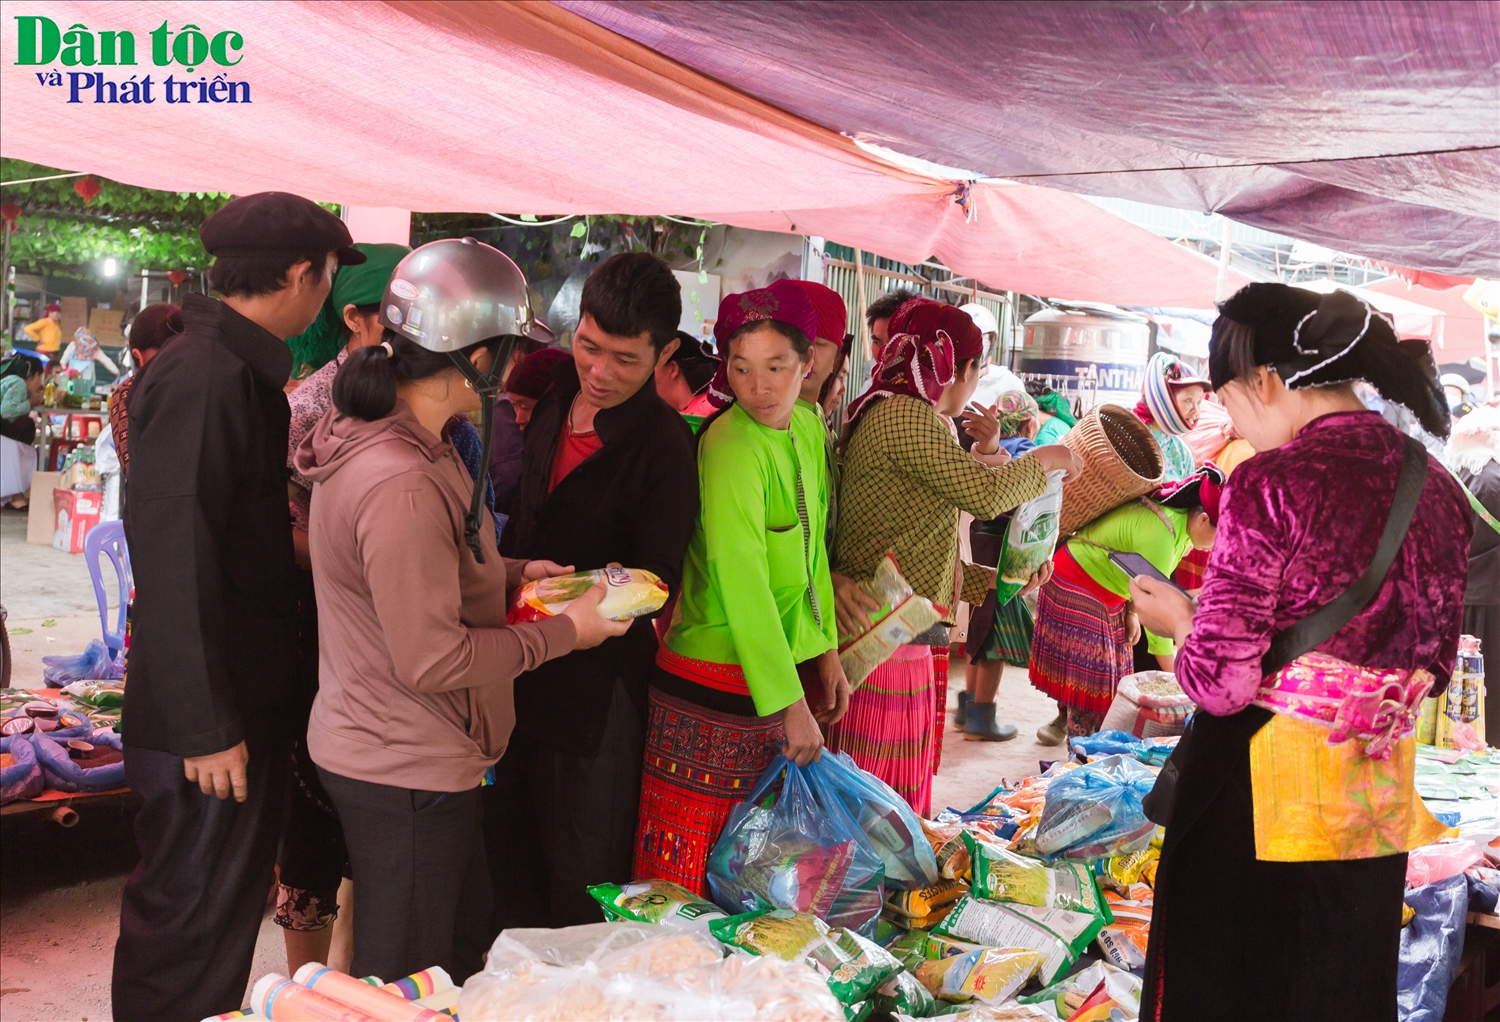 Nhiều loại hạt giống không rõ nguồn gốc được bày bán tại chợ phiên Đồng Văn.